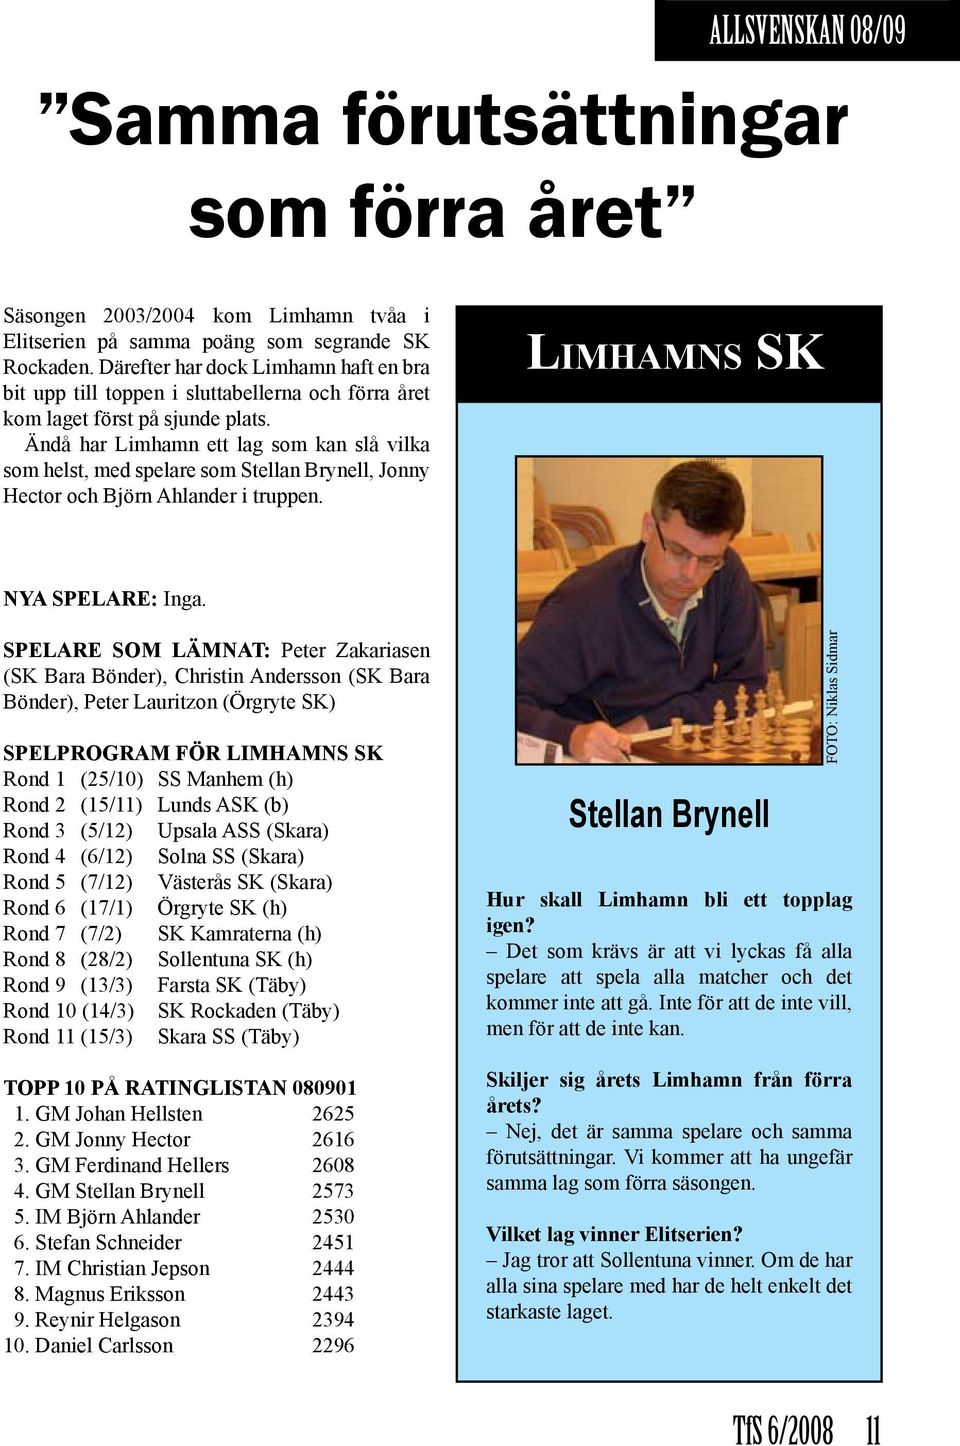 Ändå har Limhamn ett lag som kan slå vilka som helst, med spelare som Stellan Brynell, Jonny Hector och Björn Ahlander i truppen. Limhamns SK NYA SPELARE: Inga.